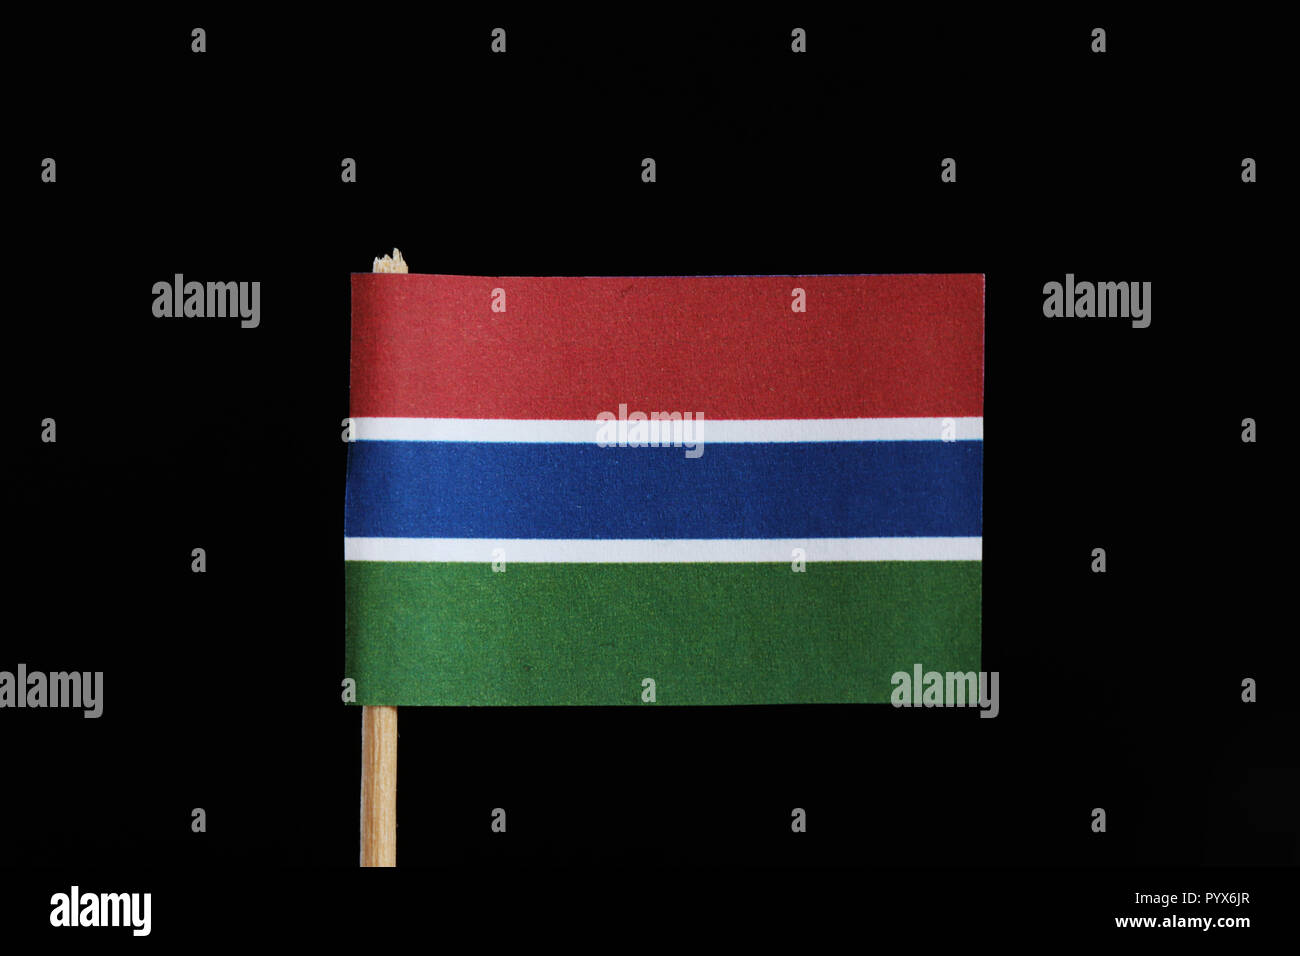 Eine Offizielle Flagge Der Gambia Auf Zahnstocher Auf Schwarzem Hintergrund Eine Horizontale Trikolore Von Rot Blau Und Grun Sie Sind Von Einem Schmalen Band Von Wh Getrennt Stockfotografie Alamy